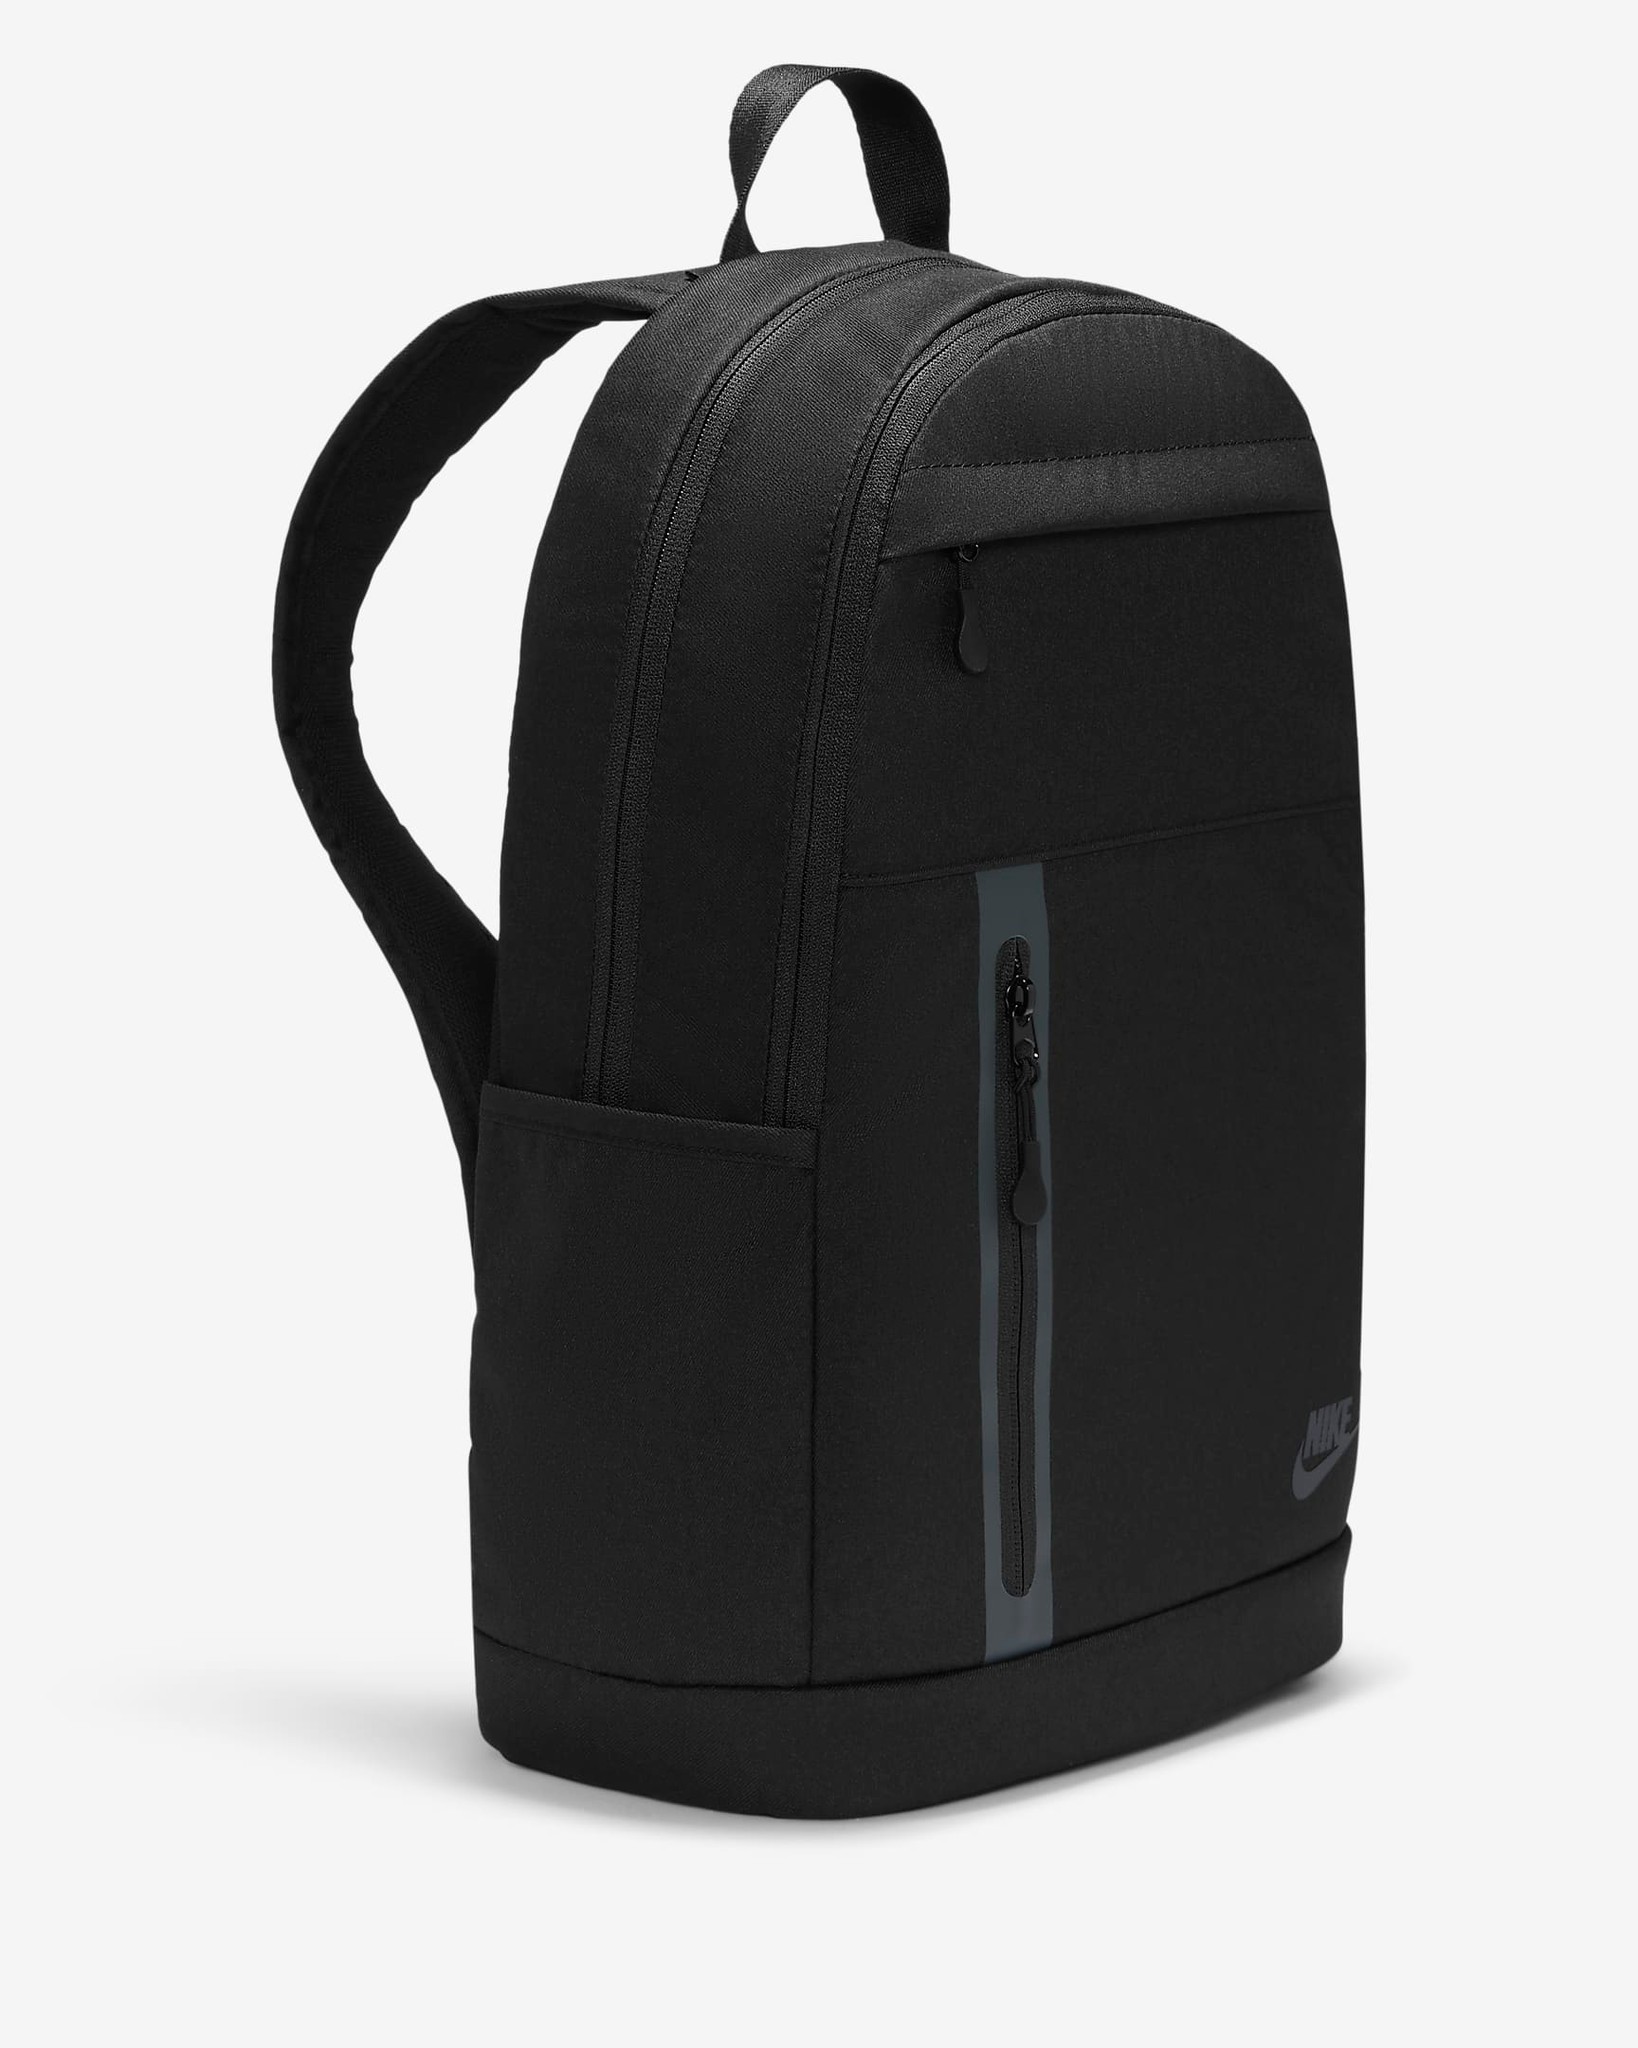 PHỤ KIỆN CHÍNH HÃNG - Balo Nike Elemental Premium Backpack Black - DN2555-010